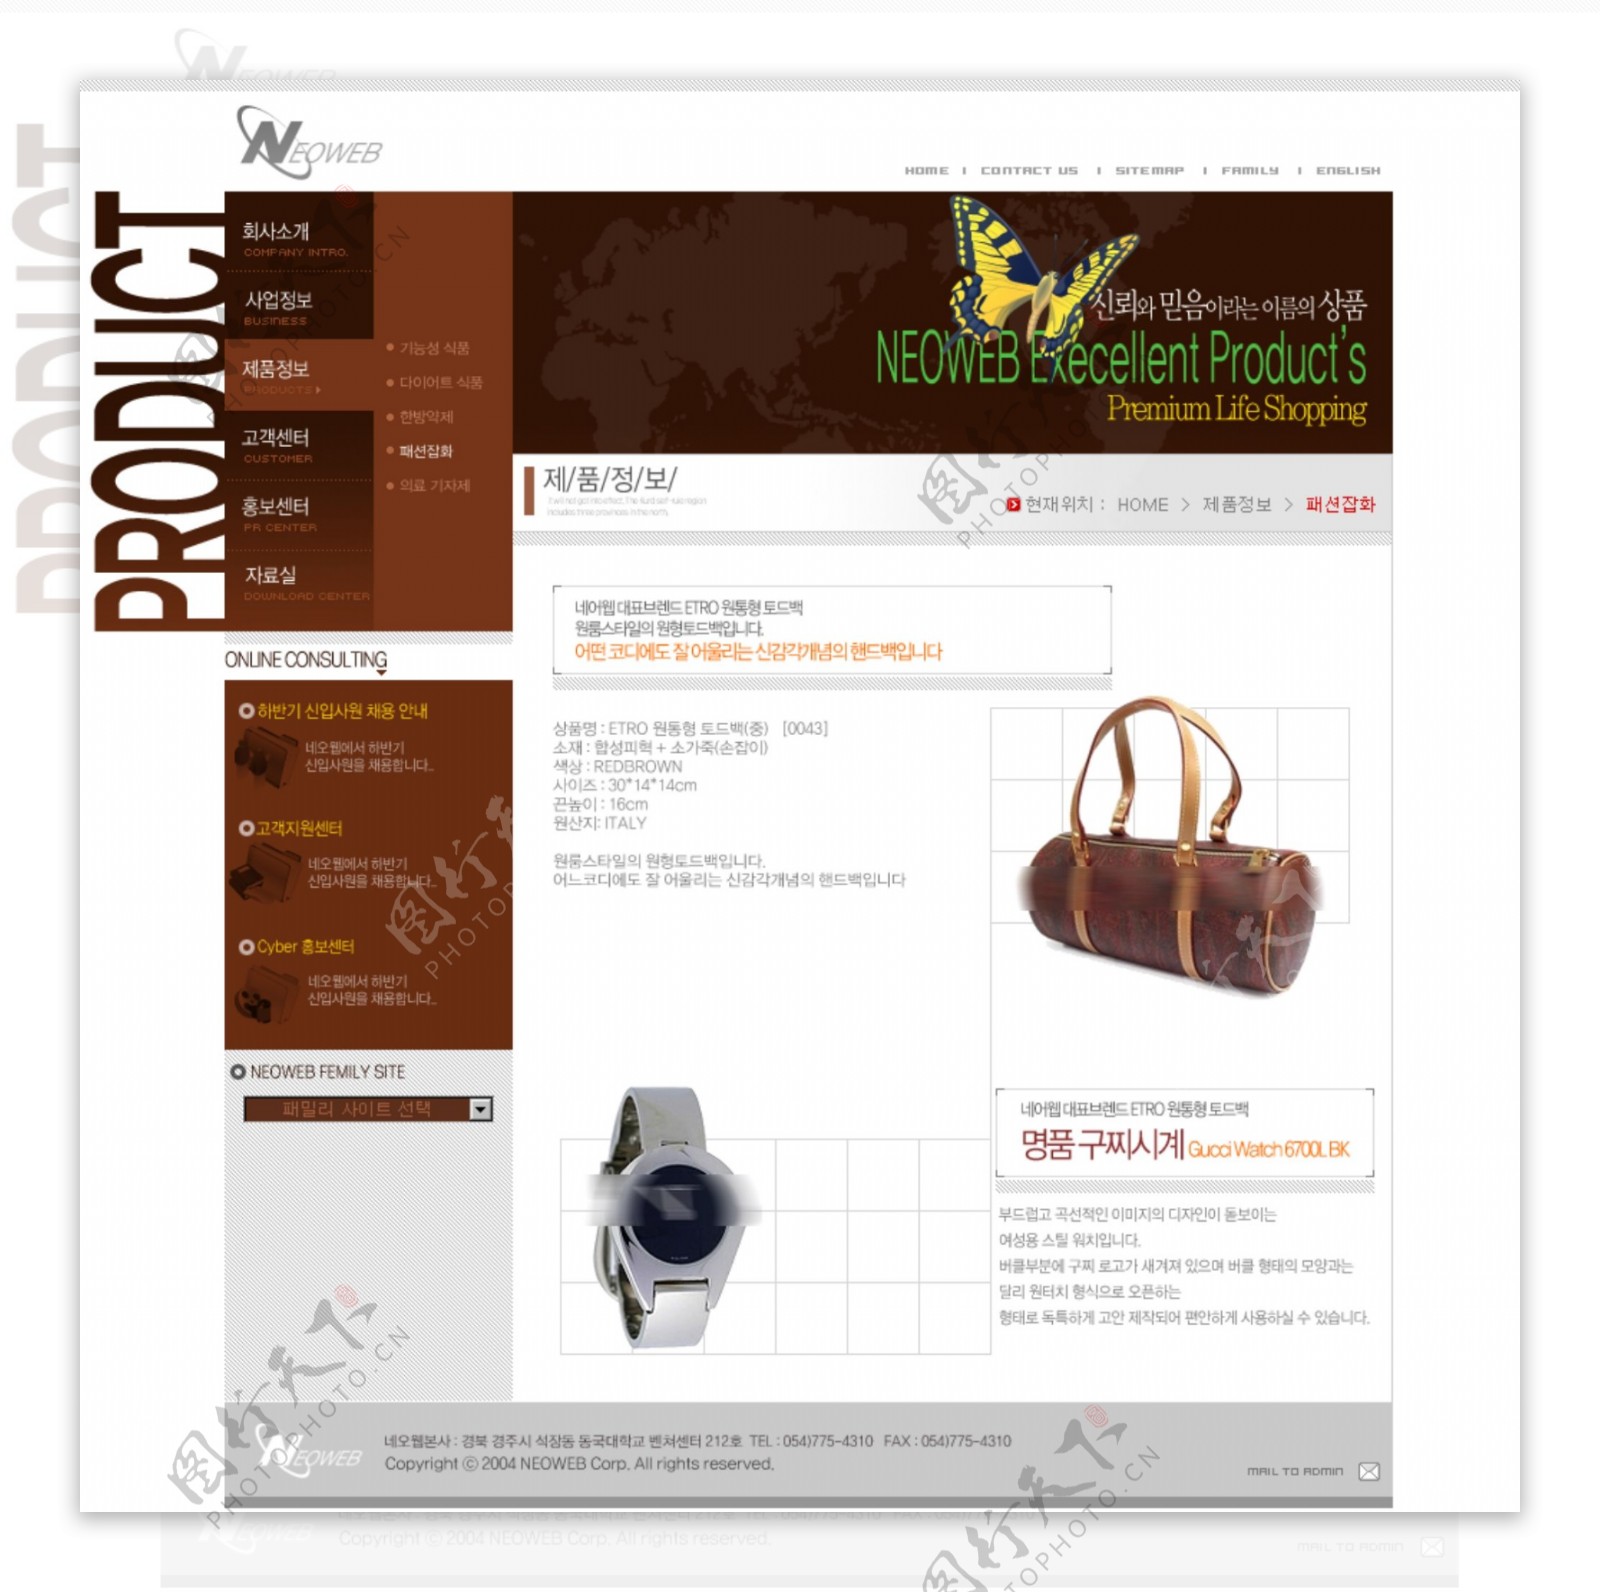 韩国psd网页设计模板图片